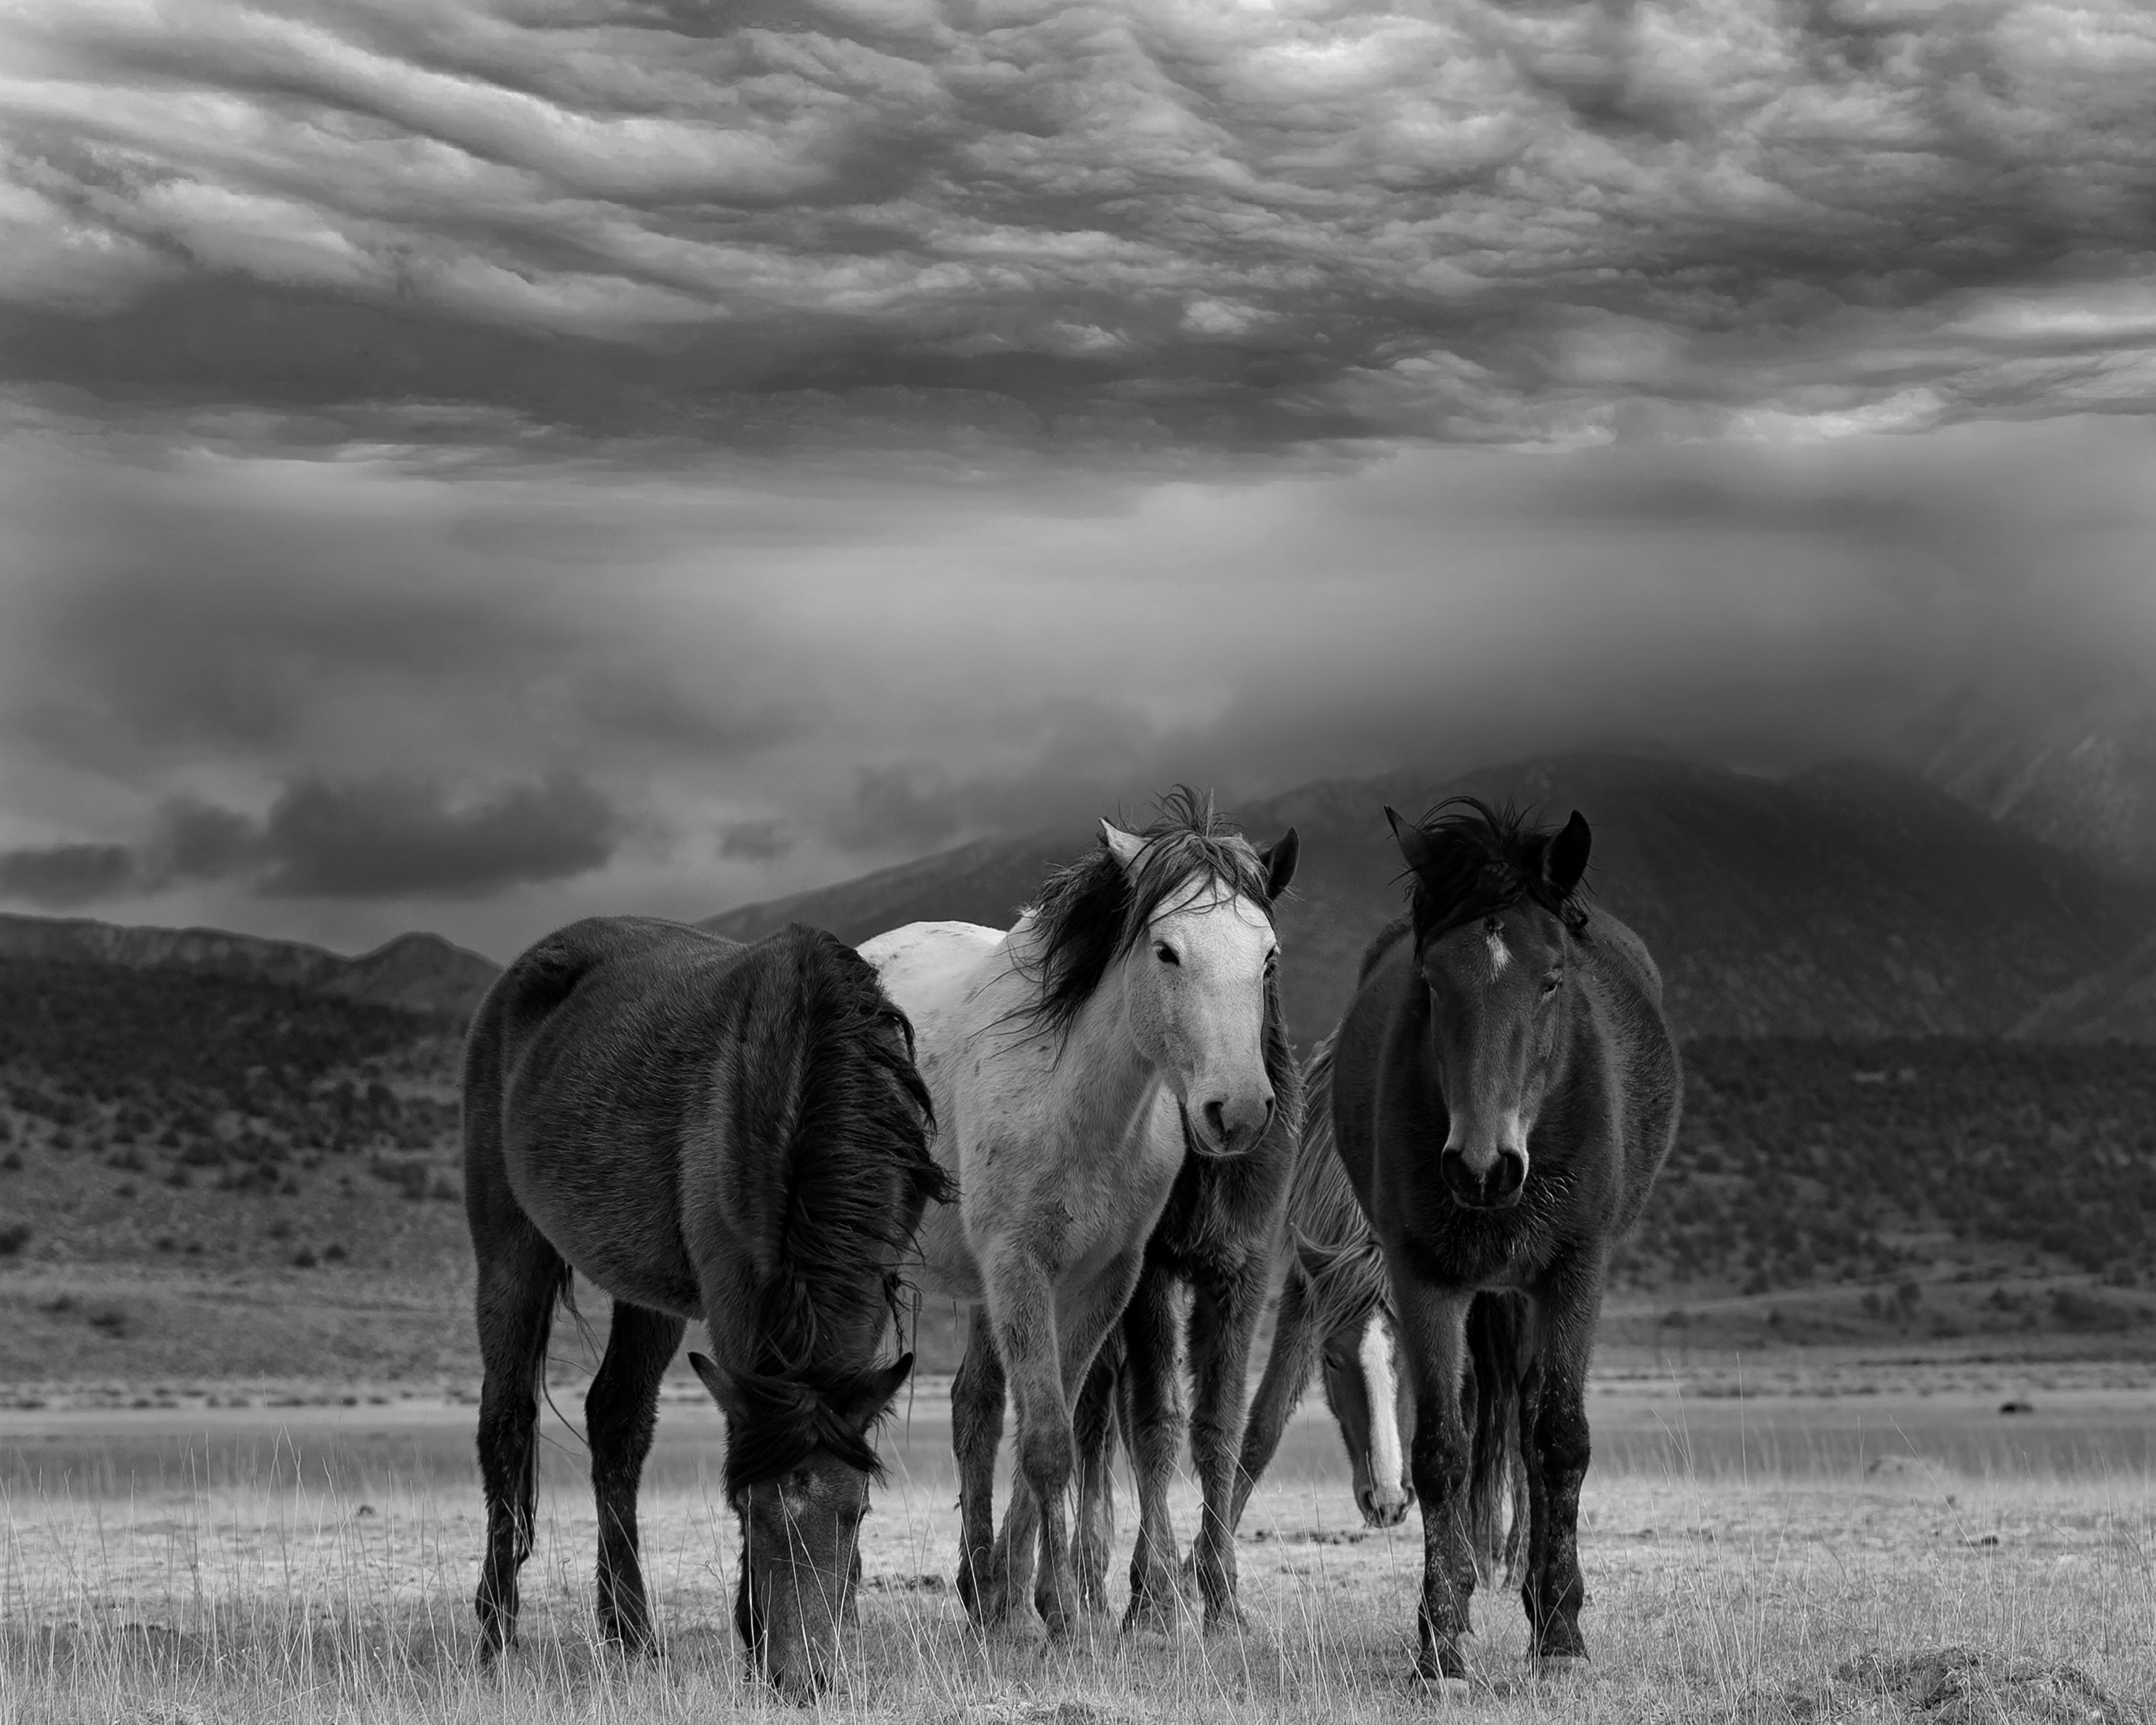 Animal Print Shane Russeck - Photo 30x40 "Dust and Horses" - Photographie en noir et blanc - Chevaux sauvages mourants